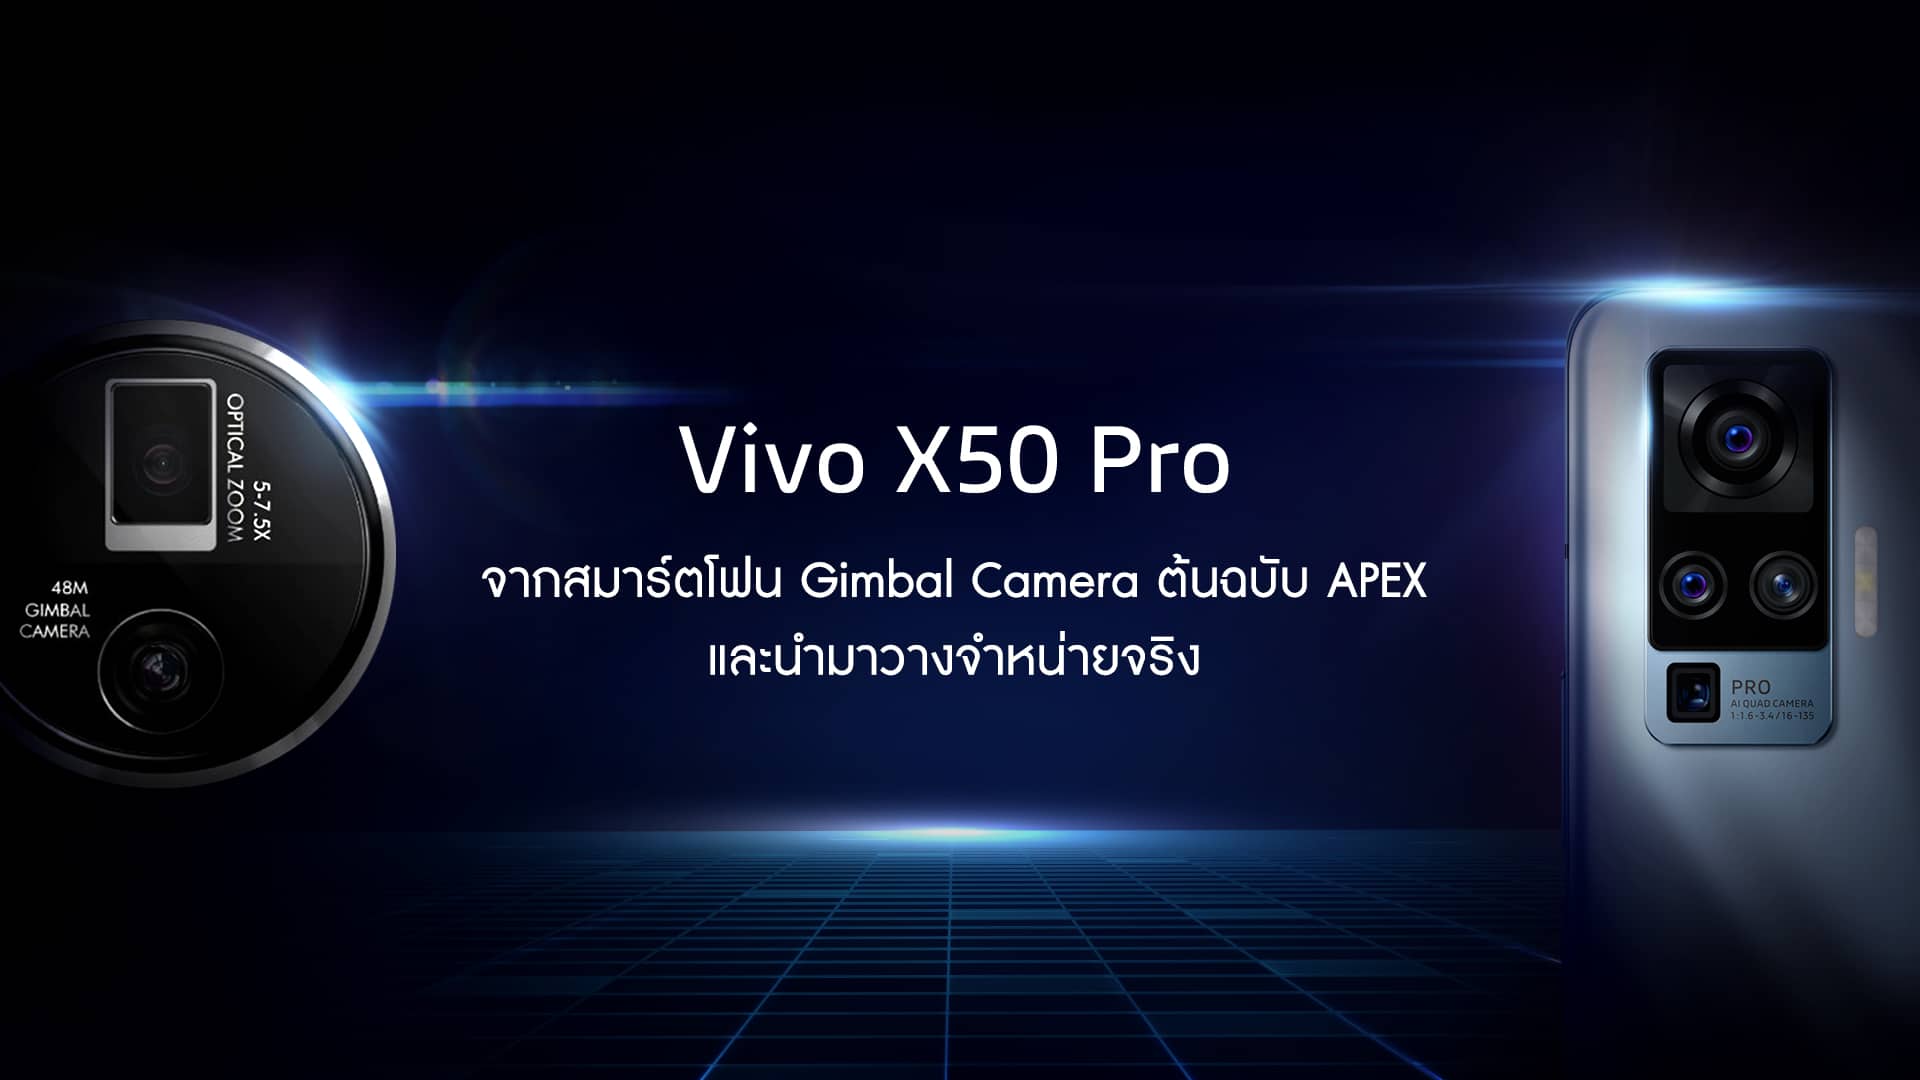 Vivo X50 Pro จากสมาร์ตโฟนต้นฉบับ APEX สู่สมาร์ตโฟนสุดล้ำมาพร้อมระบบกันสั่น Gimbal ที่ผลิตและวางจำหน่ายจริง และคาดว่าจะขายในไทยเร็วๆ นี้ 1